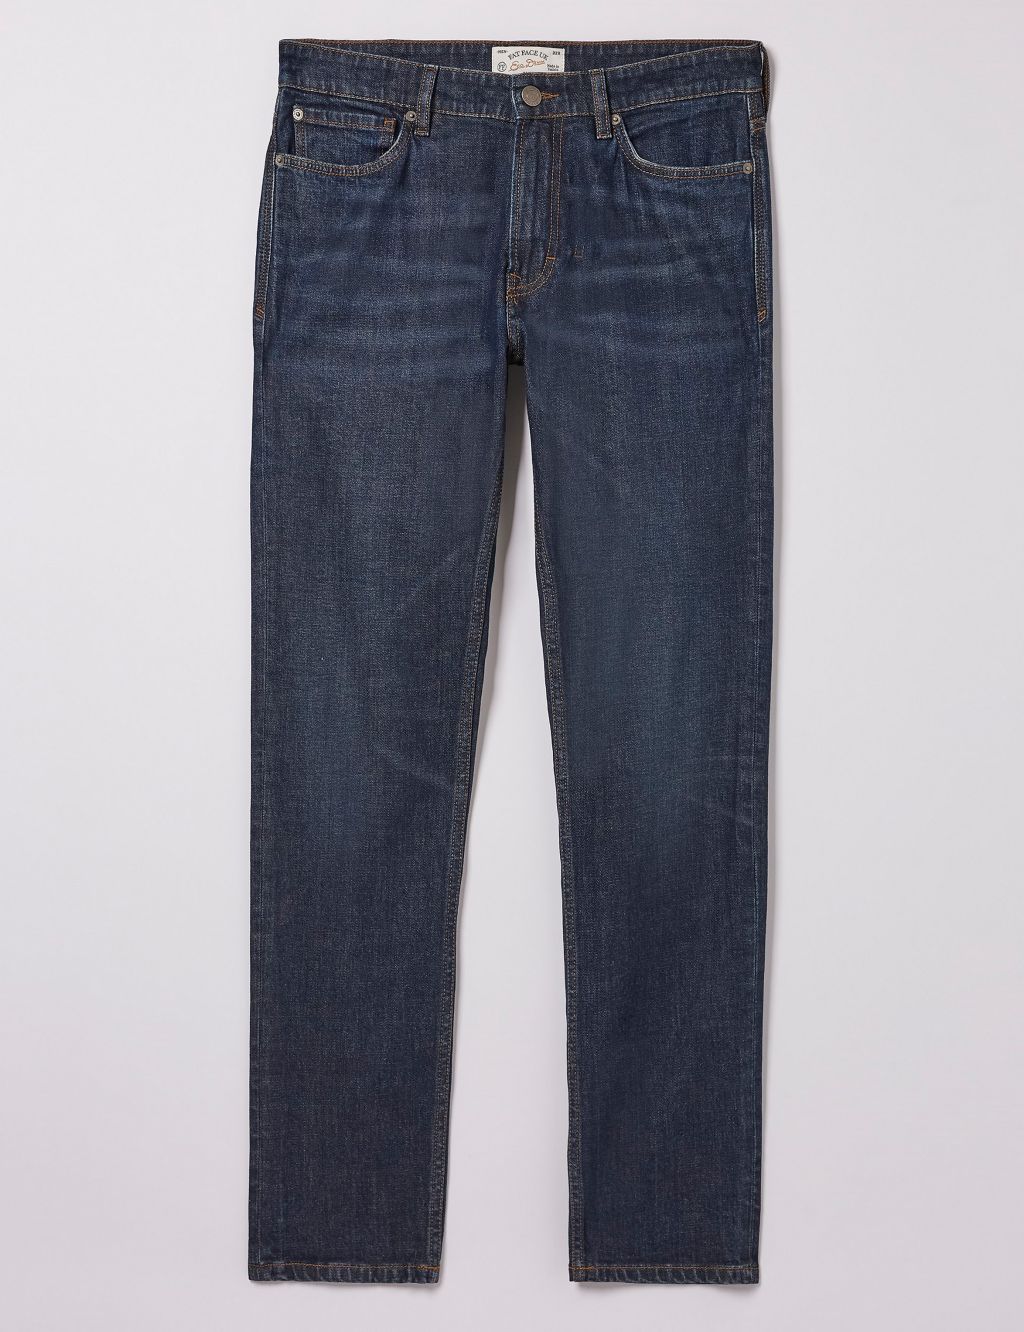 Slim Fit Vintage Wash Jeans image 2